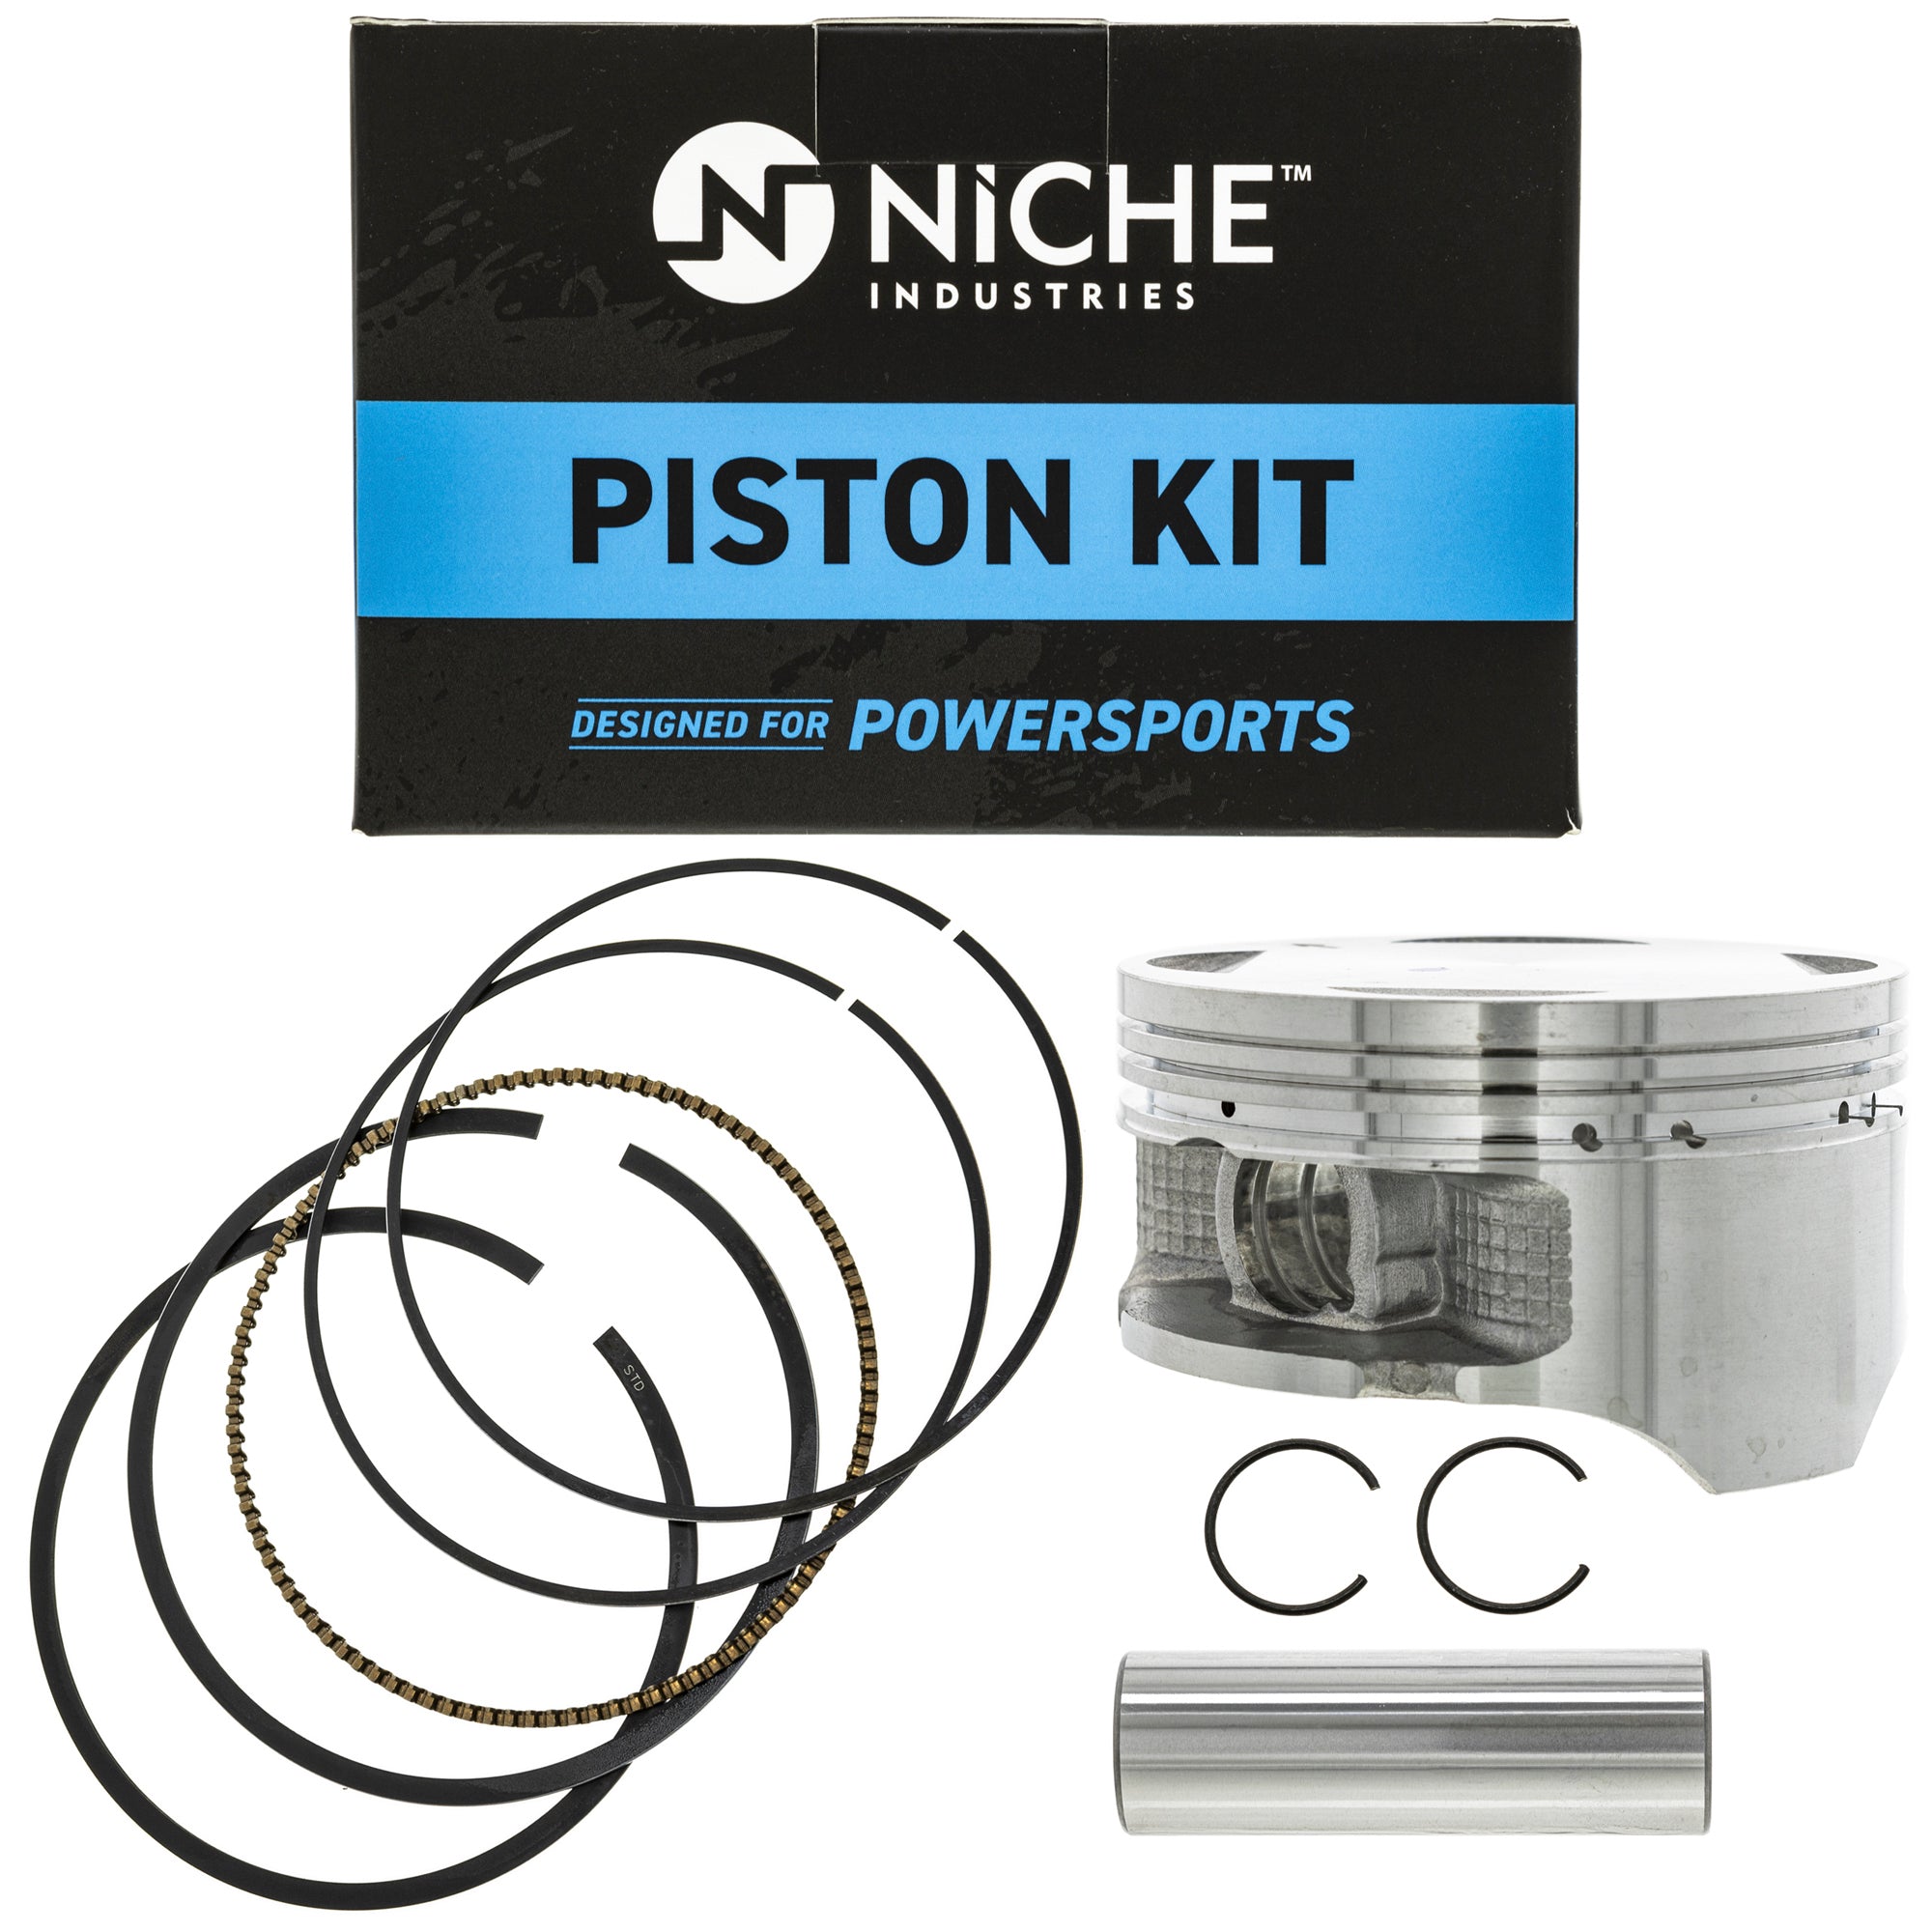 NICHE MK1001142 Piston Kit